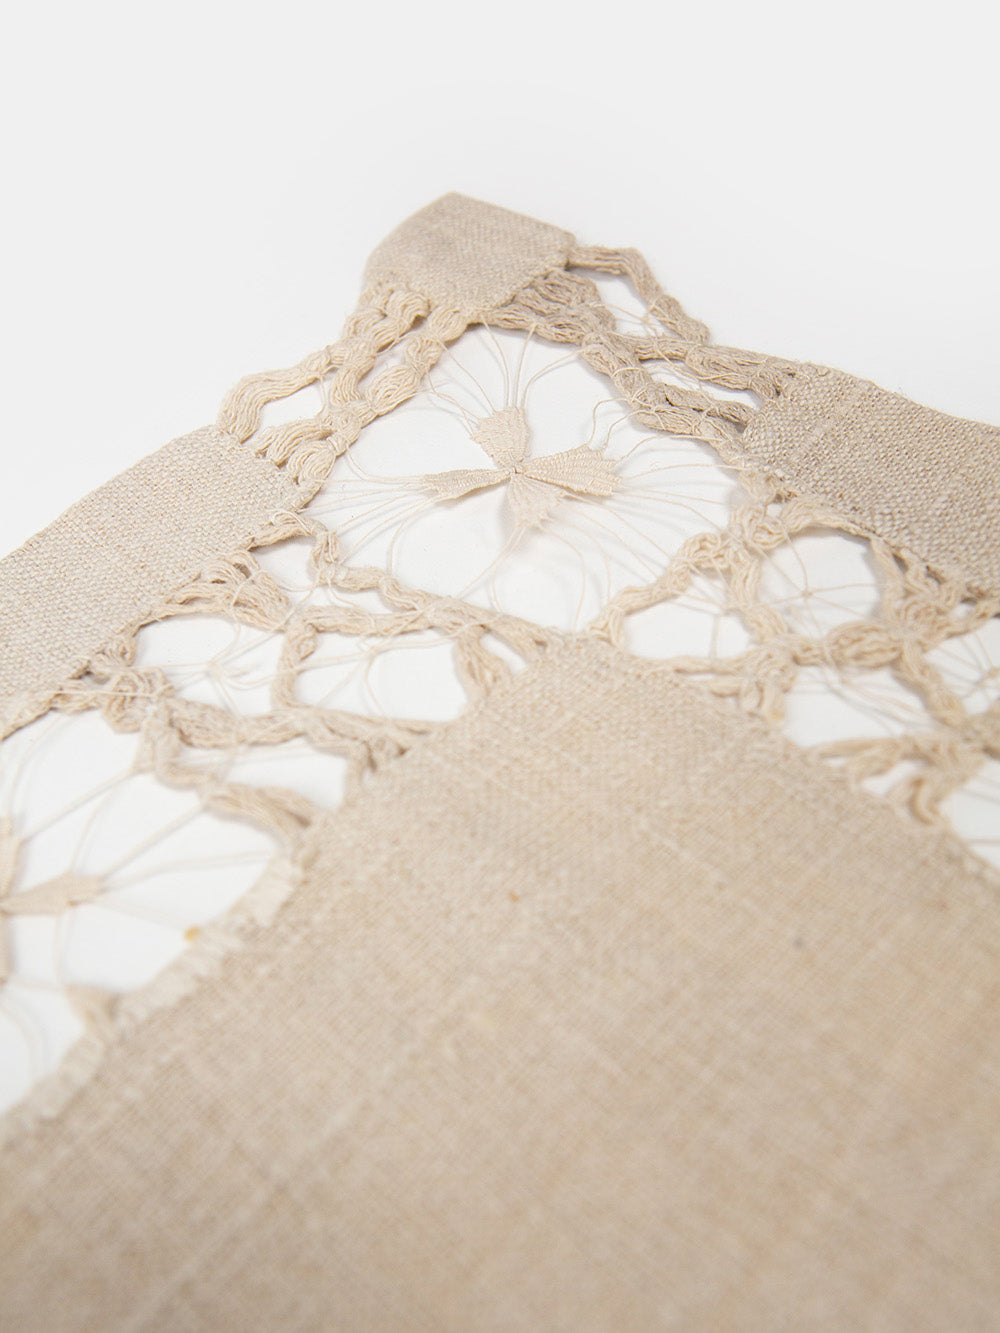 Antique Cotton Lace Cloth